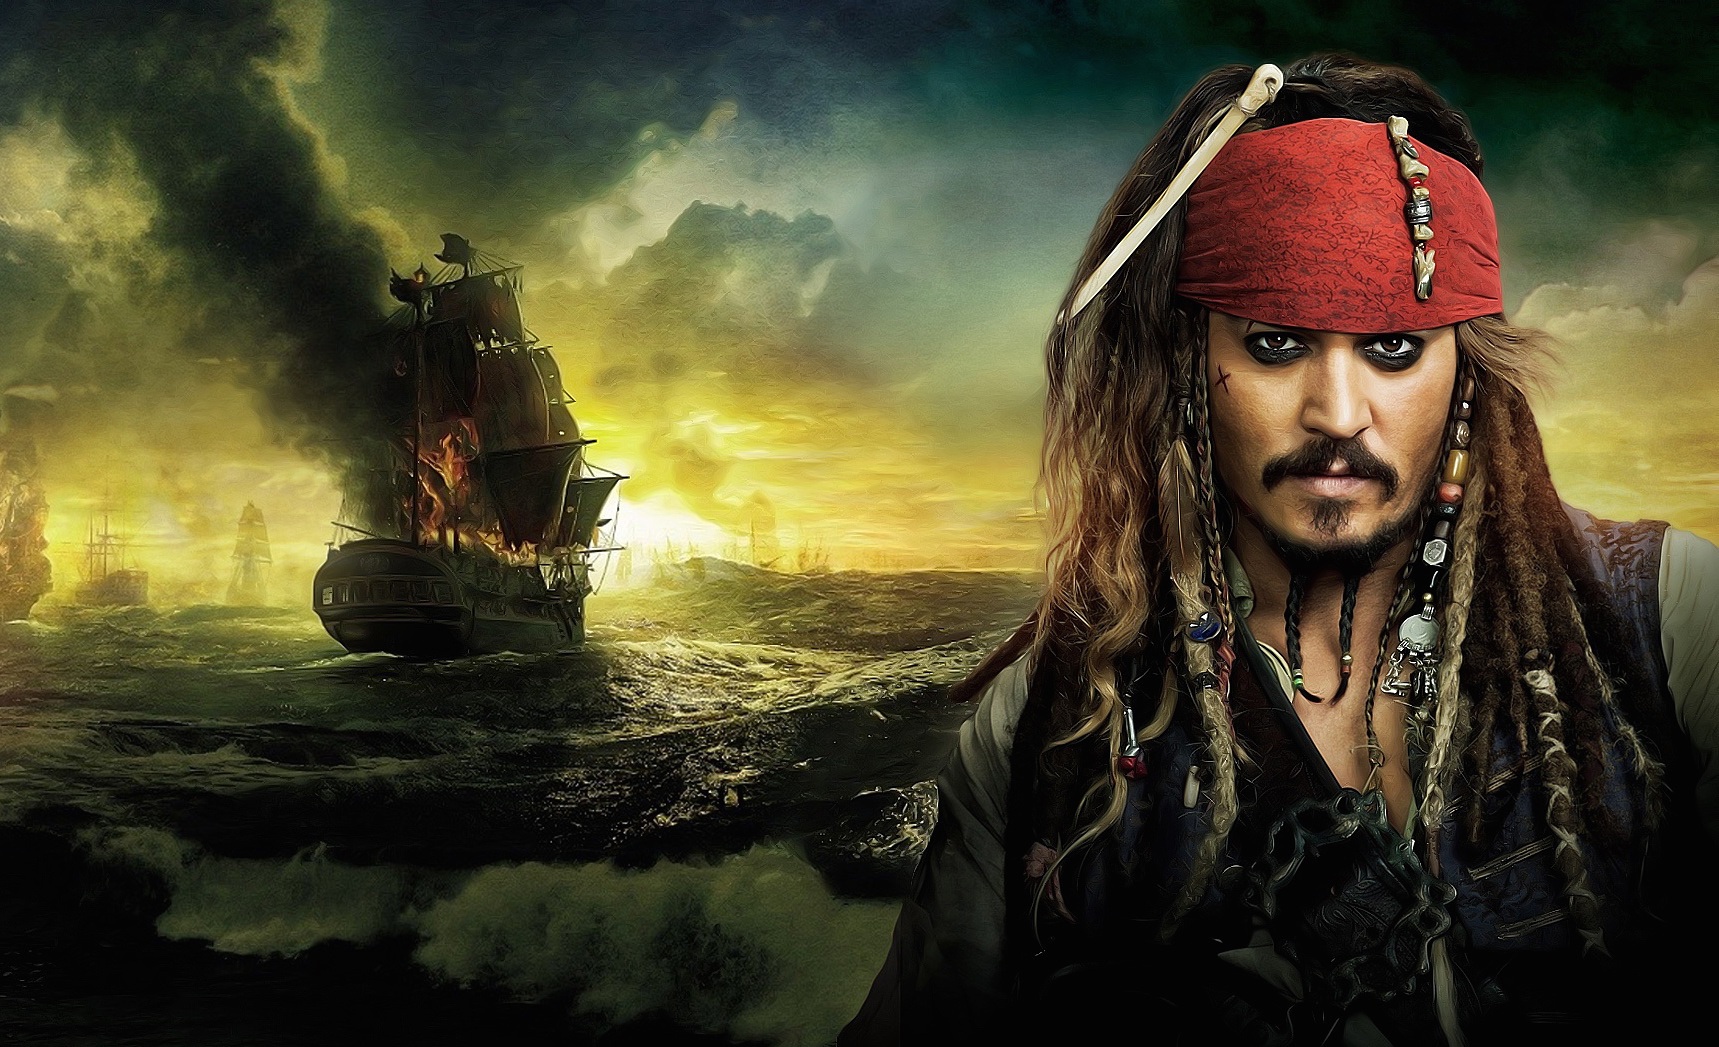 بالفيديو .. جوني ديب وقراصنة الكاريبي في جزء جديد من Pirates of Carriby